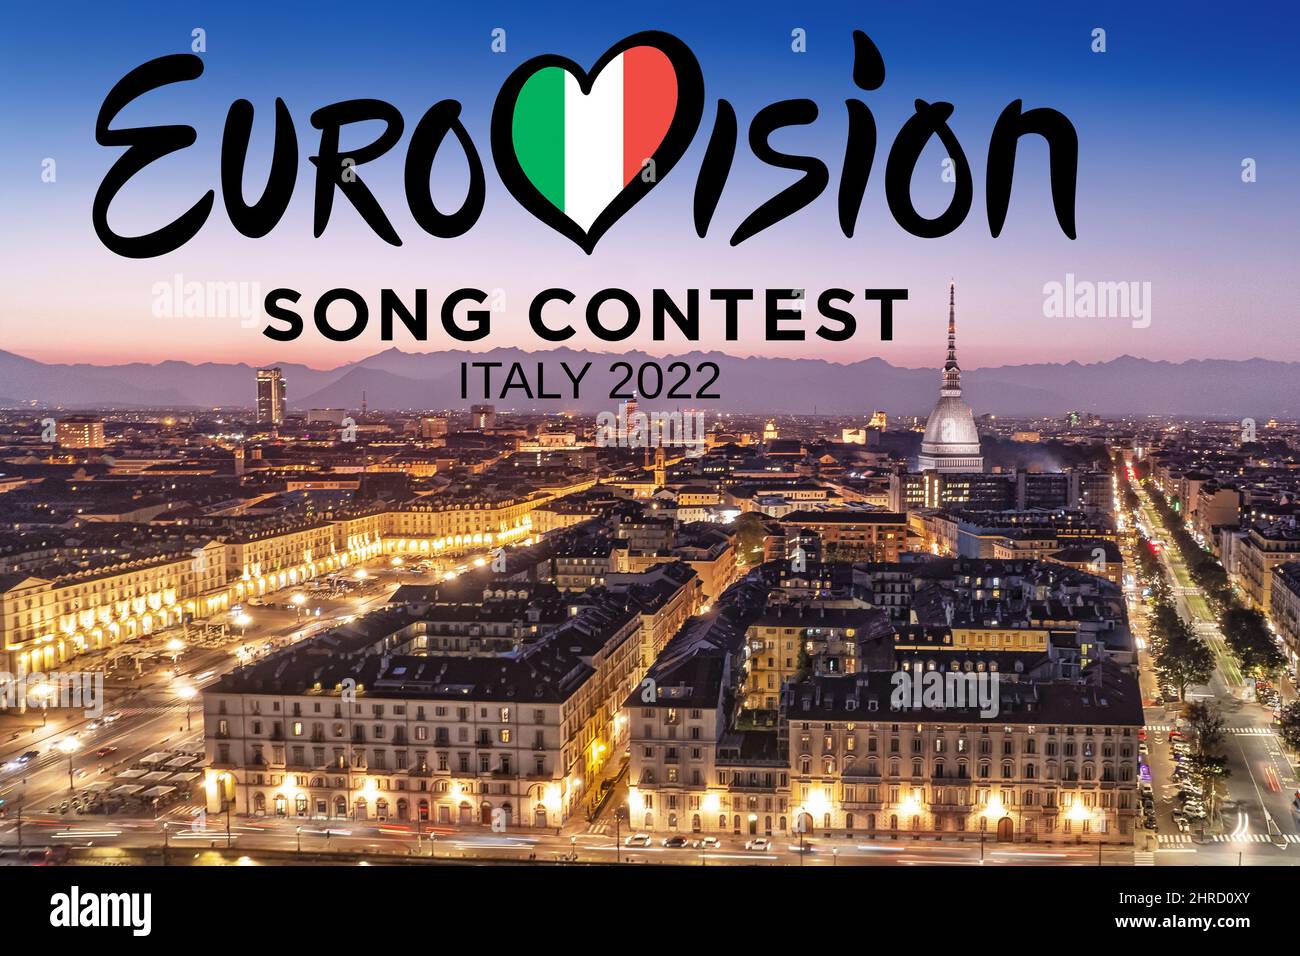 Logo du Concours Eurovision de la chanson sur le paysage urbain de Turin la nuit. L'édition 66th aura lieu à Turin en mai 2022. Turin, Italie - février 2022 Banque D'Images